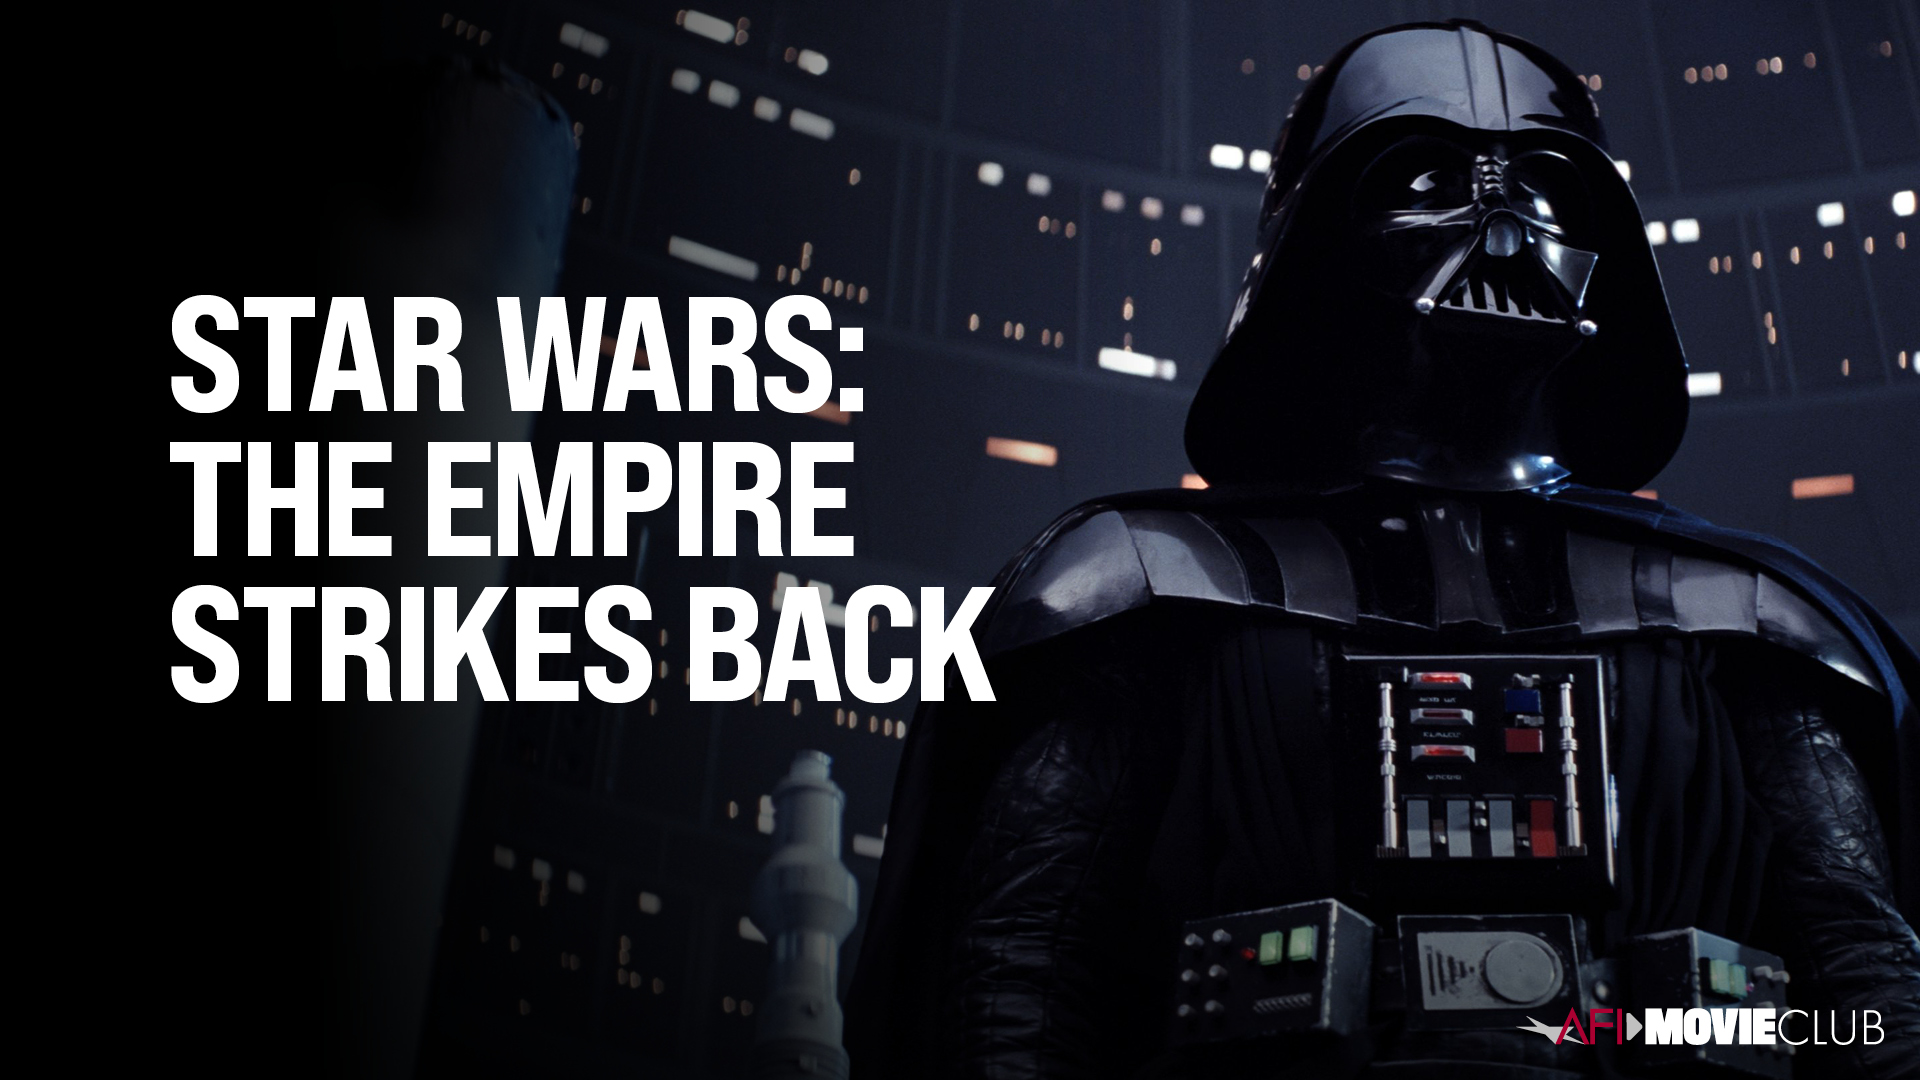 Star Wars: The Empire Strikes Back Film Still